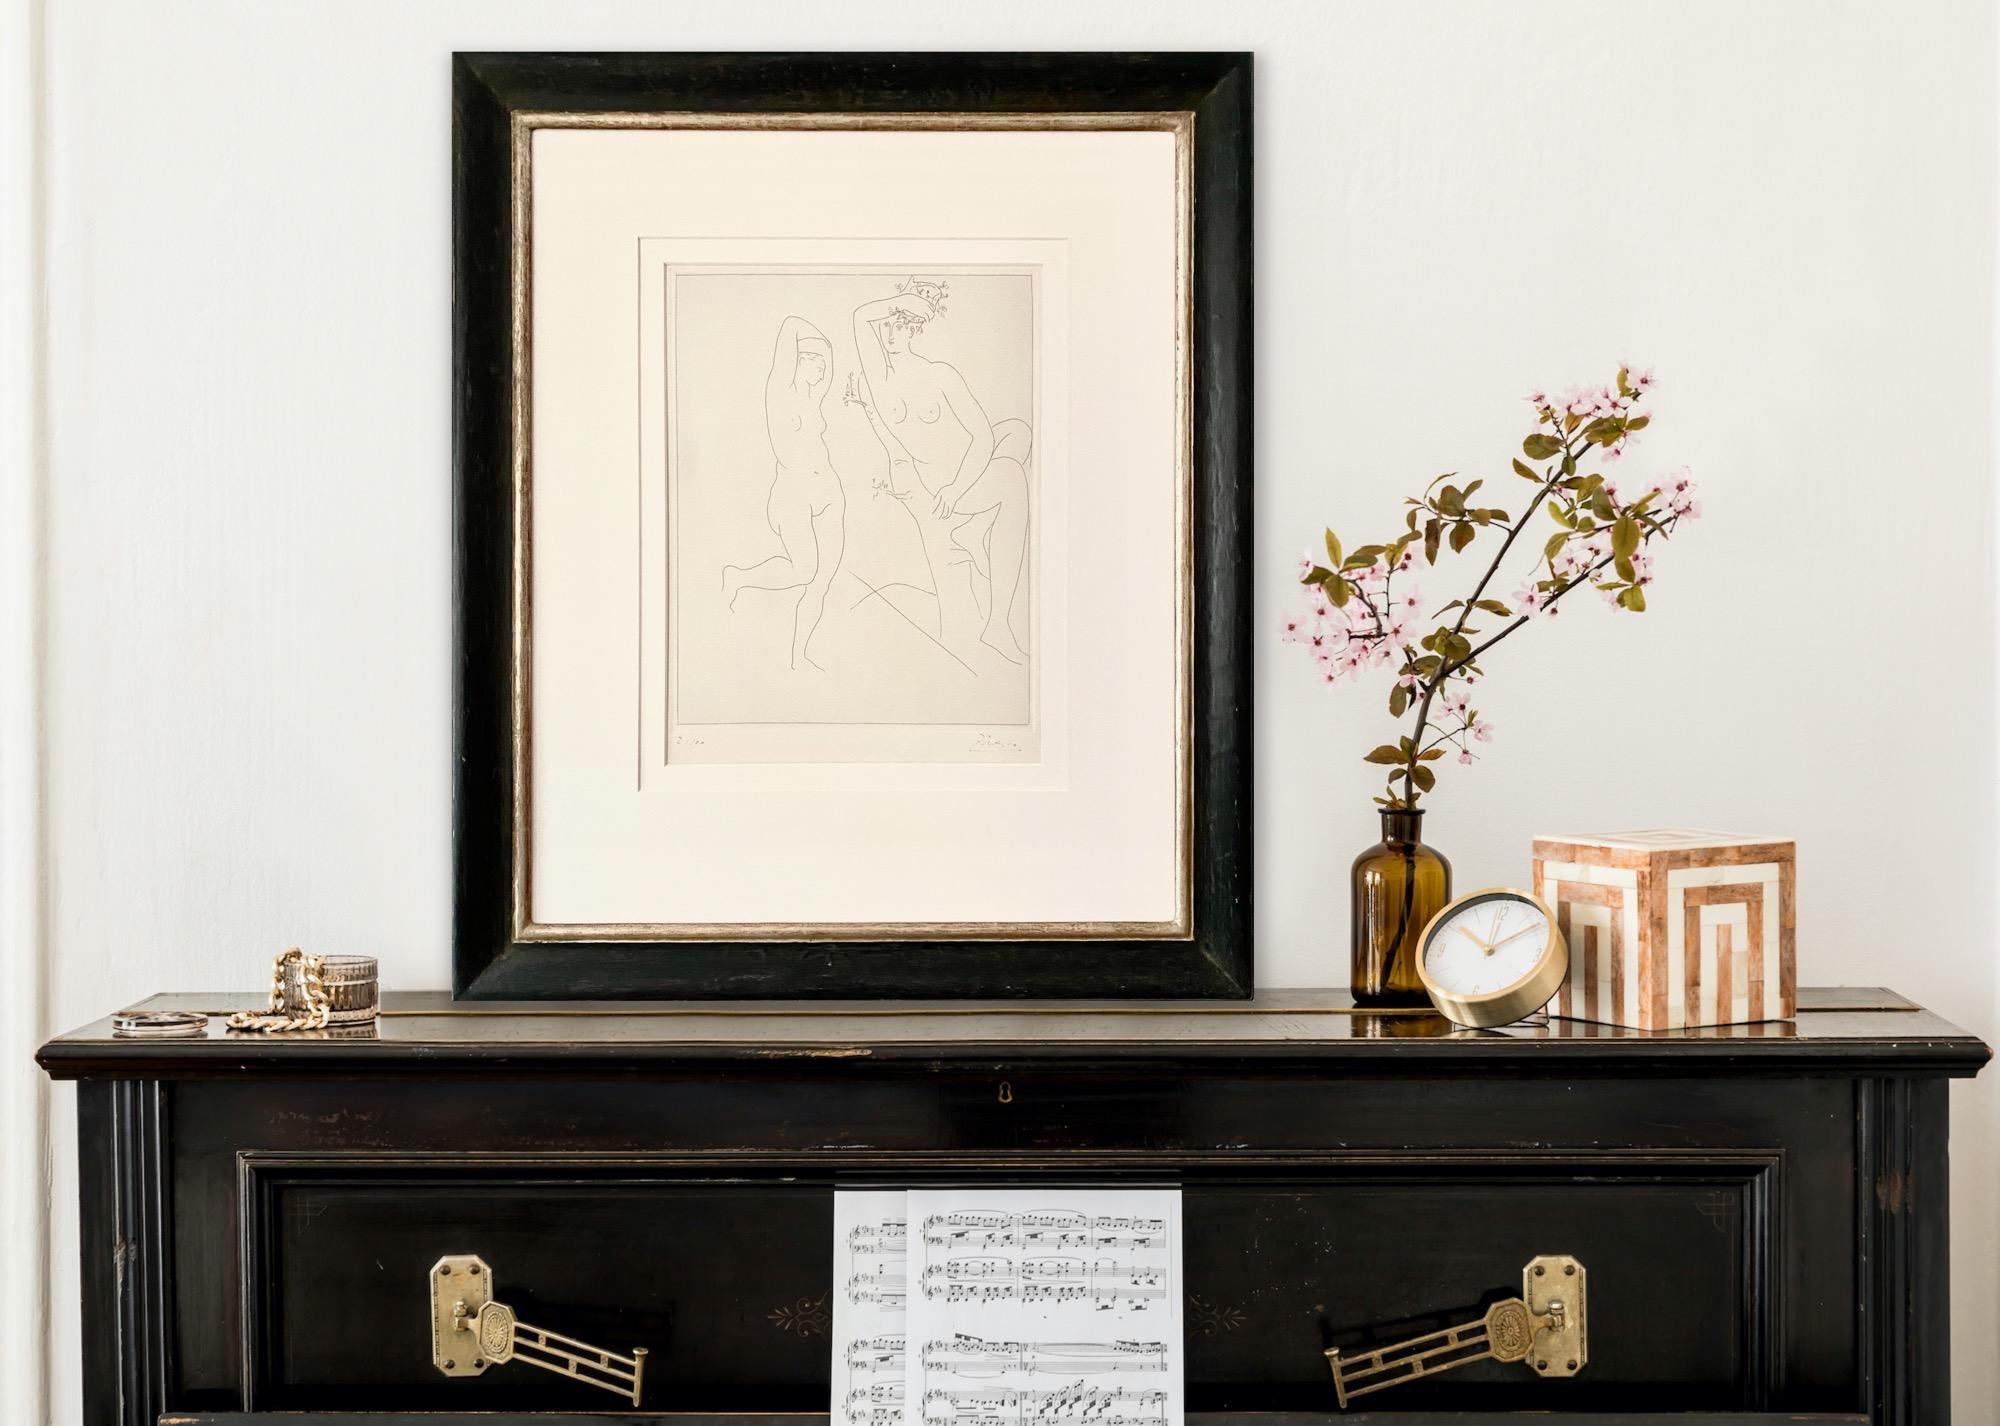 Deux Femmes nues dans un Arbre - Print by Pablo Picasso